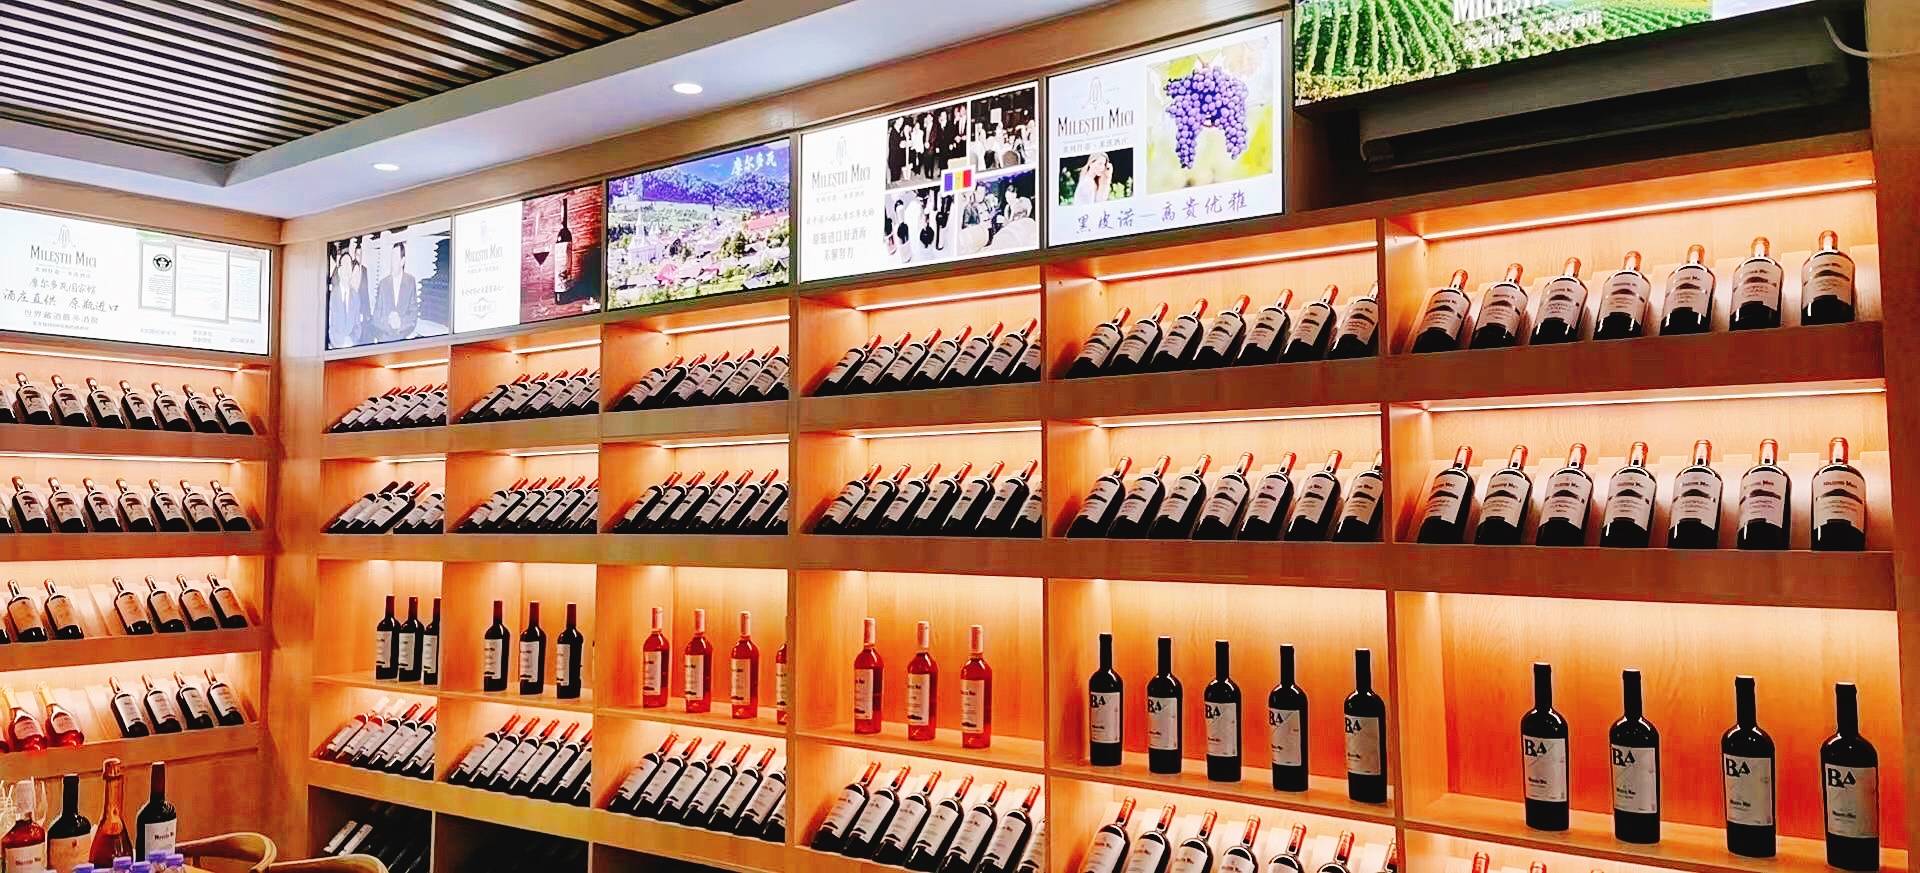 深圳米茨酒庄专卖店盛大开业开启葡萄酒新时代